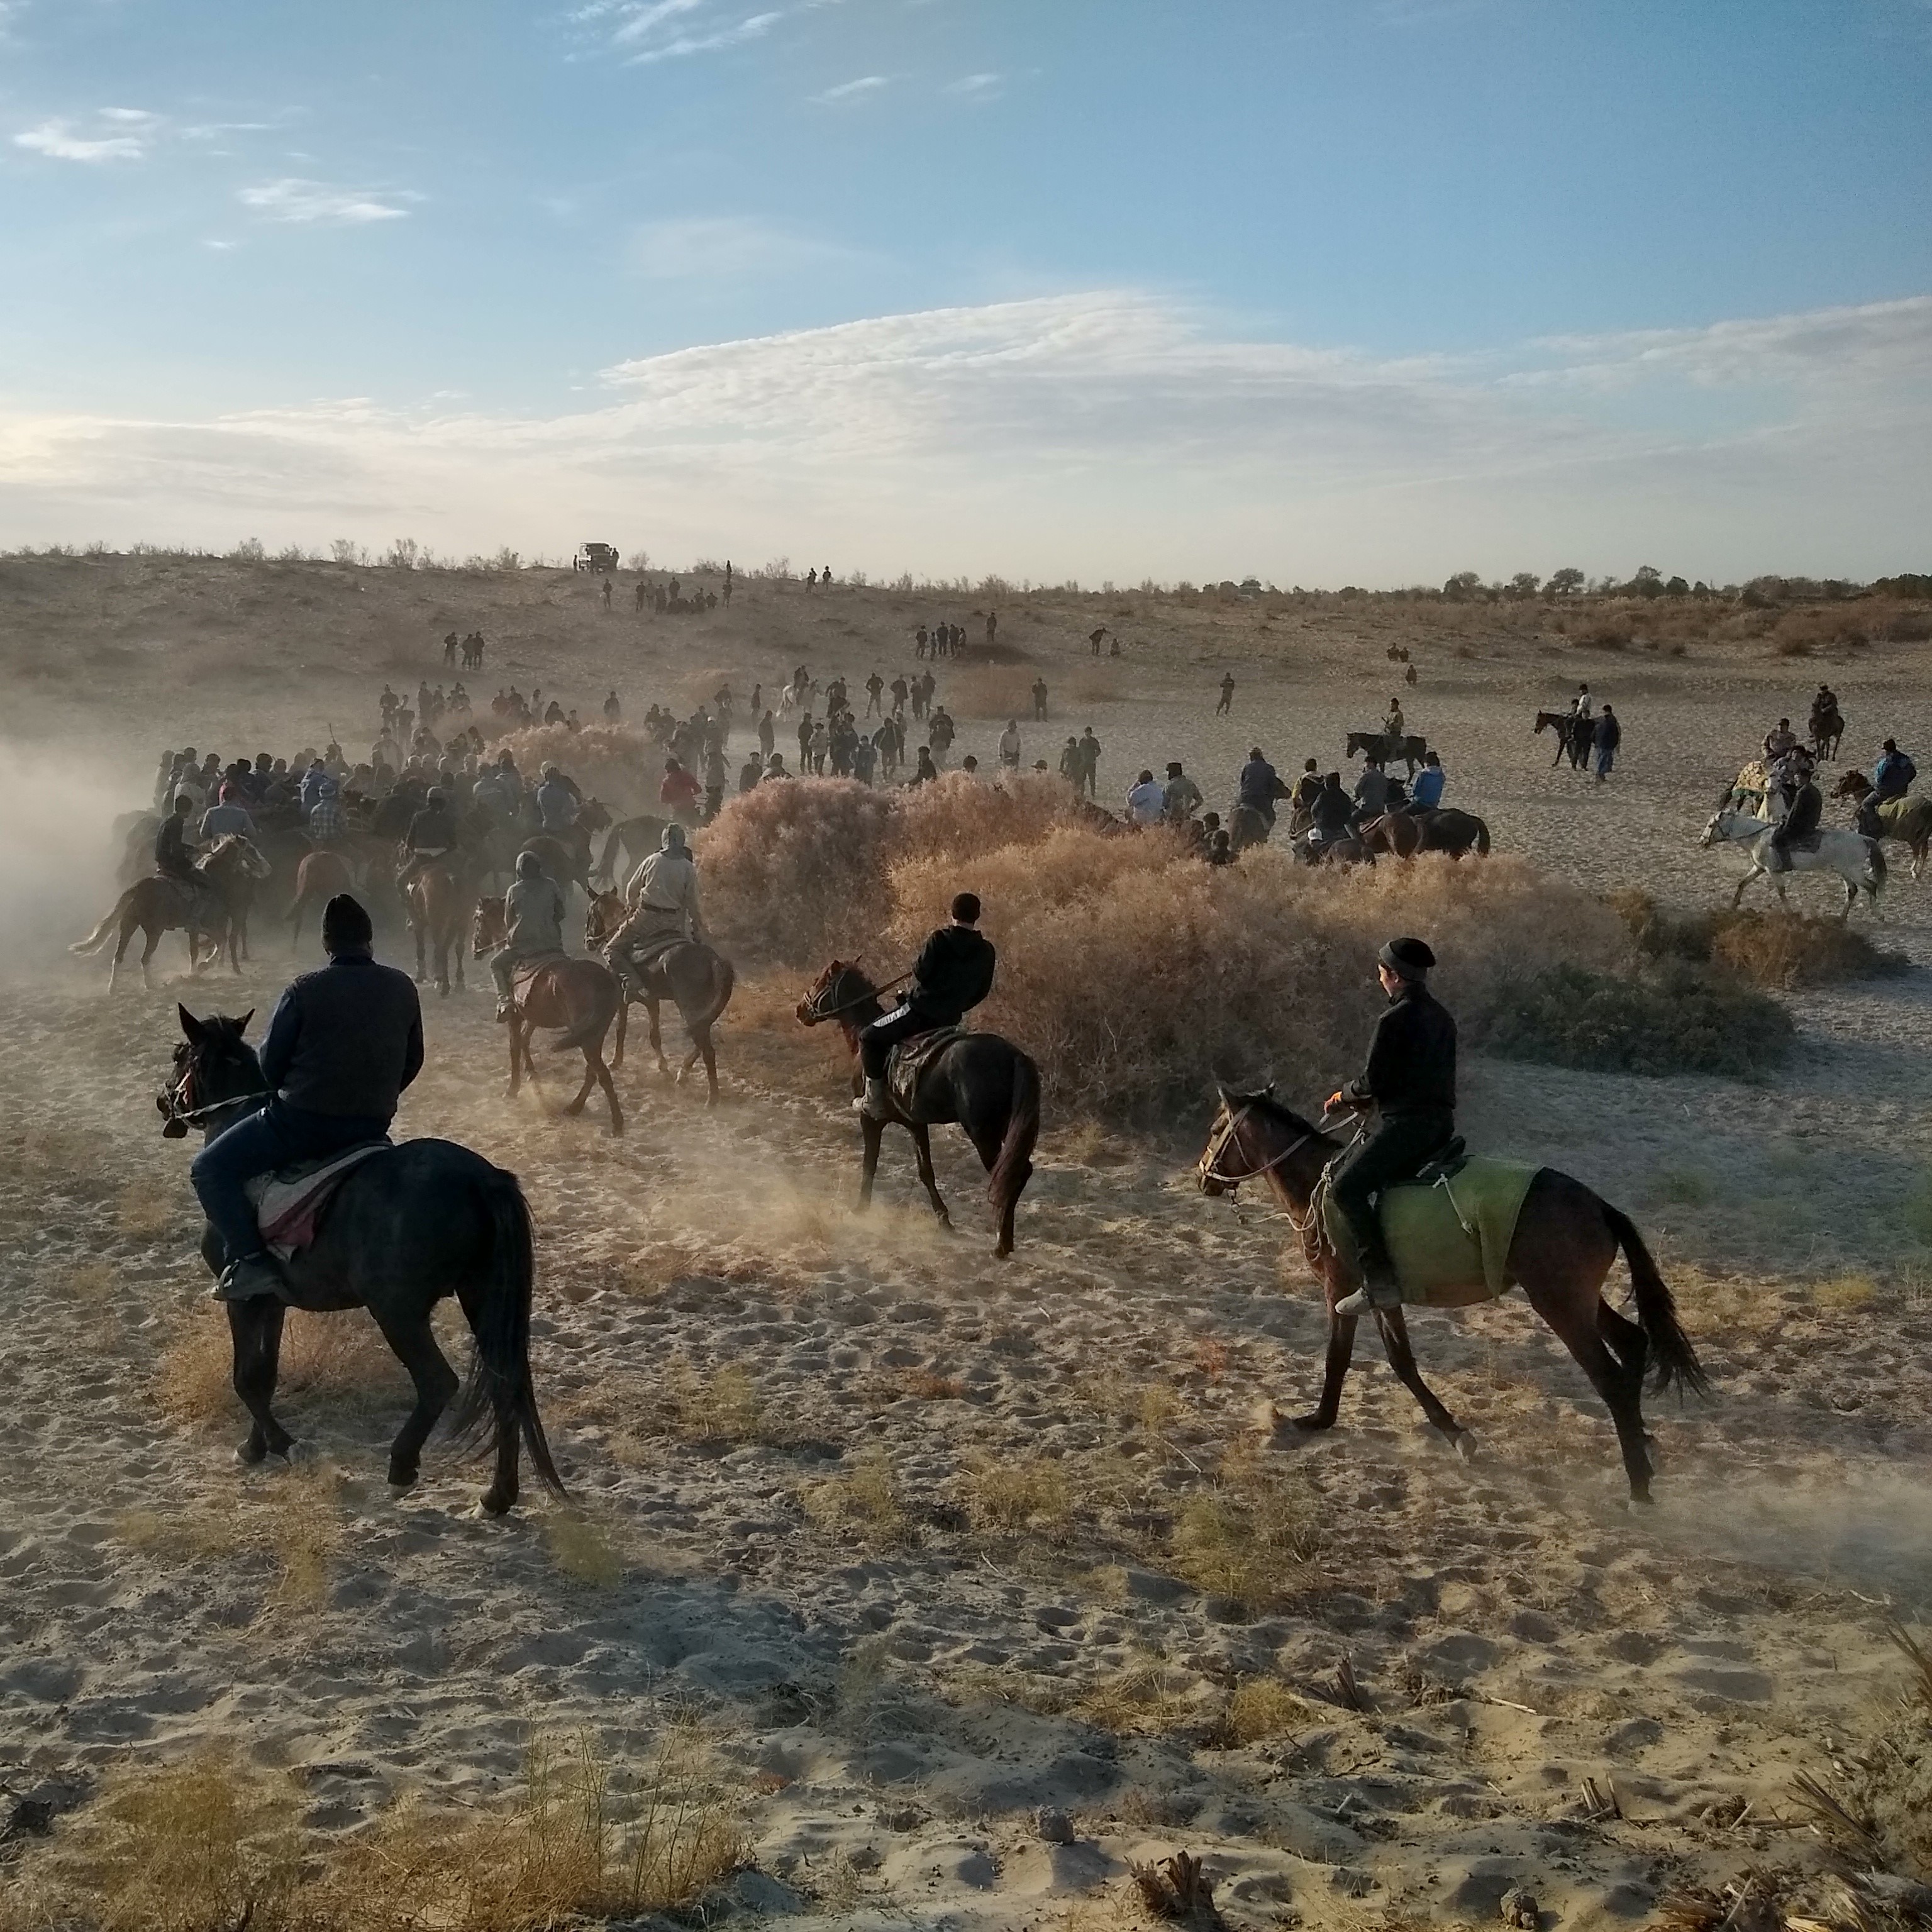 Group of horseback riders in the desert